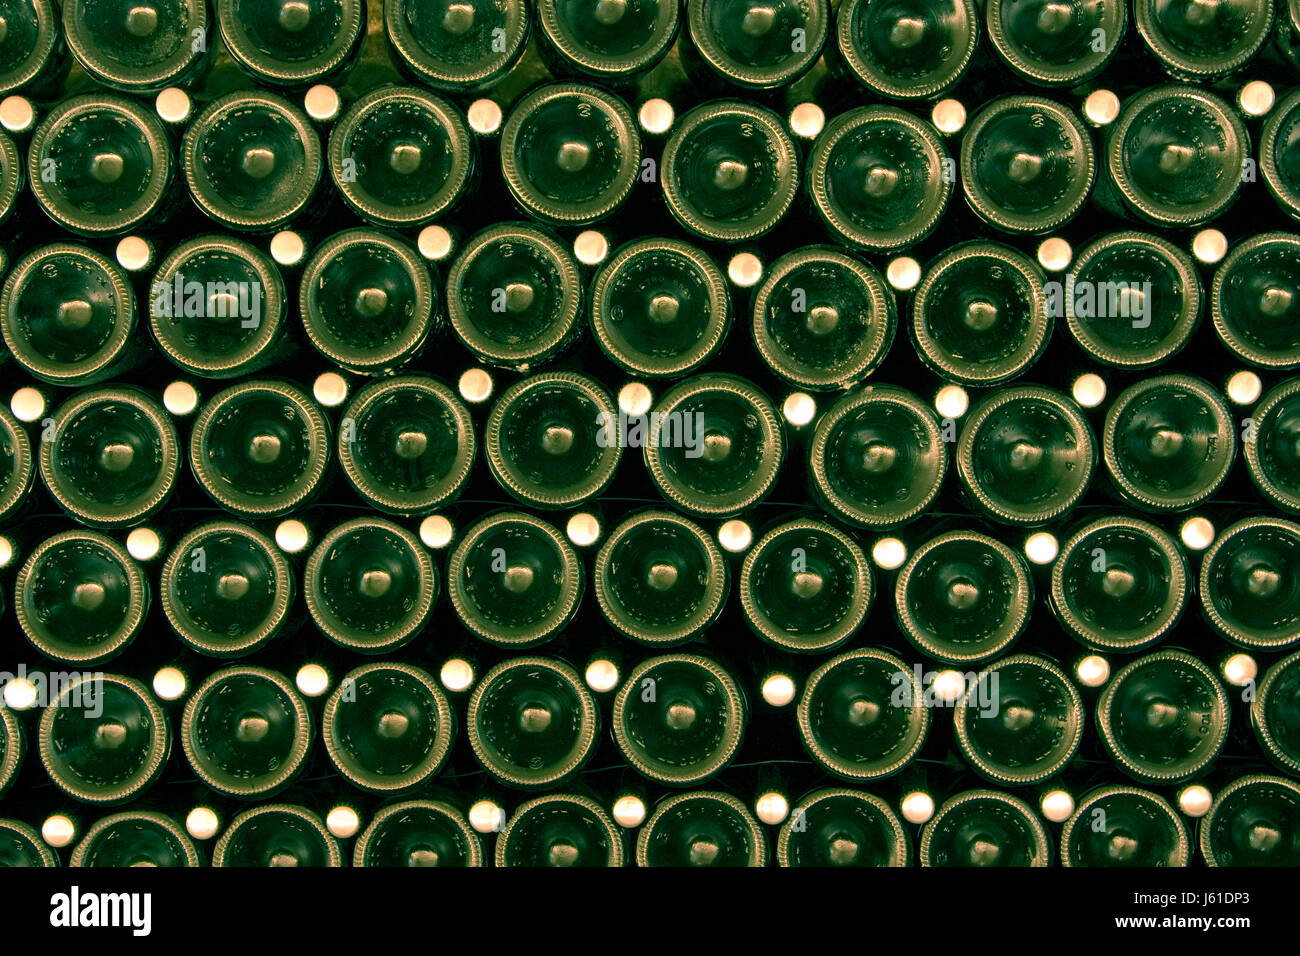 wine bottles abstract glassy green wine bottle seal shutter stack shelf Stock Photo